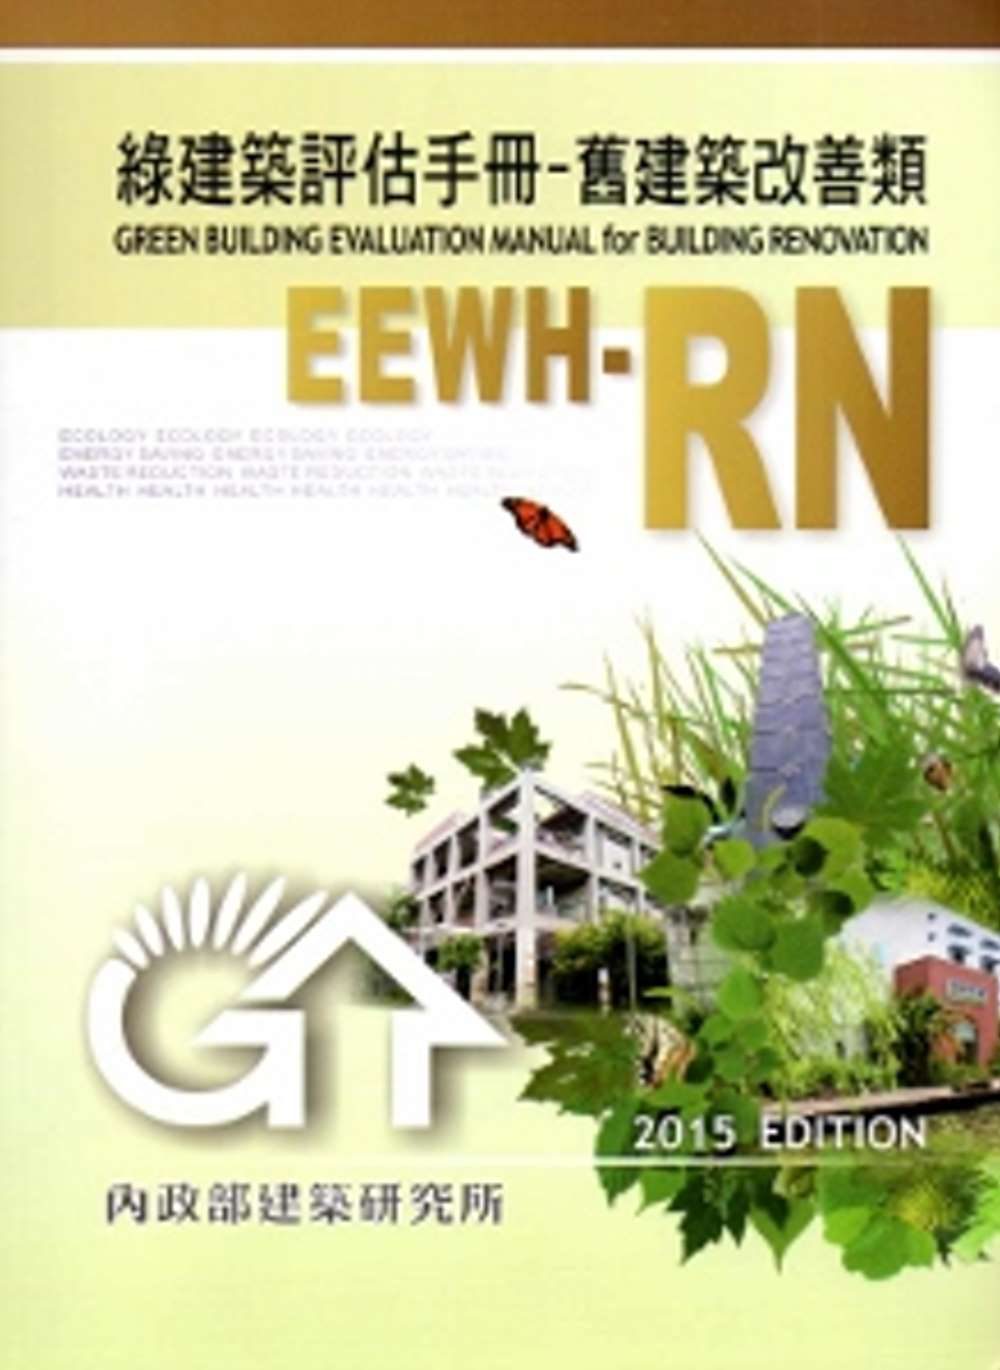 綠建築評估手冊-舊建築改善類[2015年版/二版]